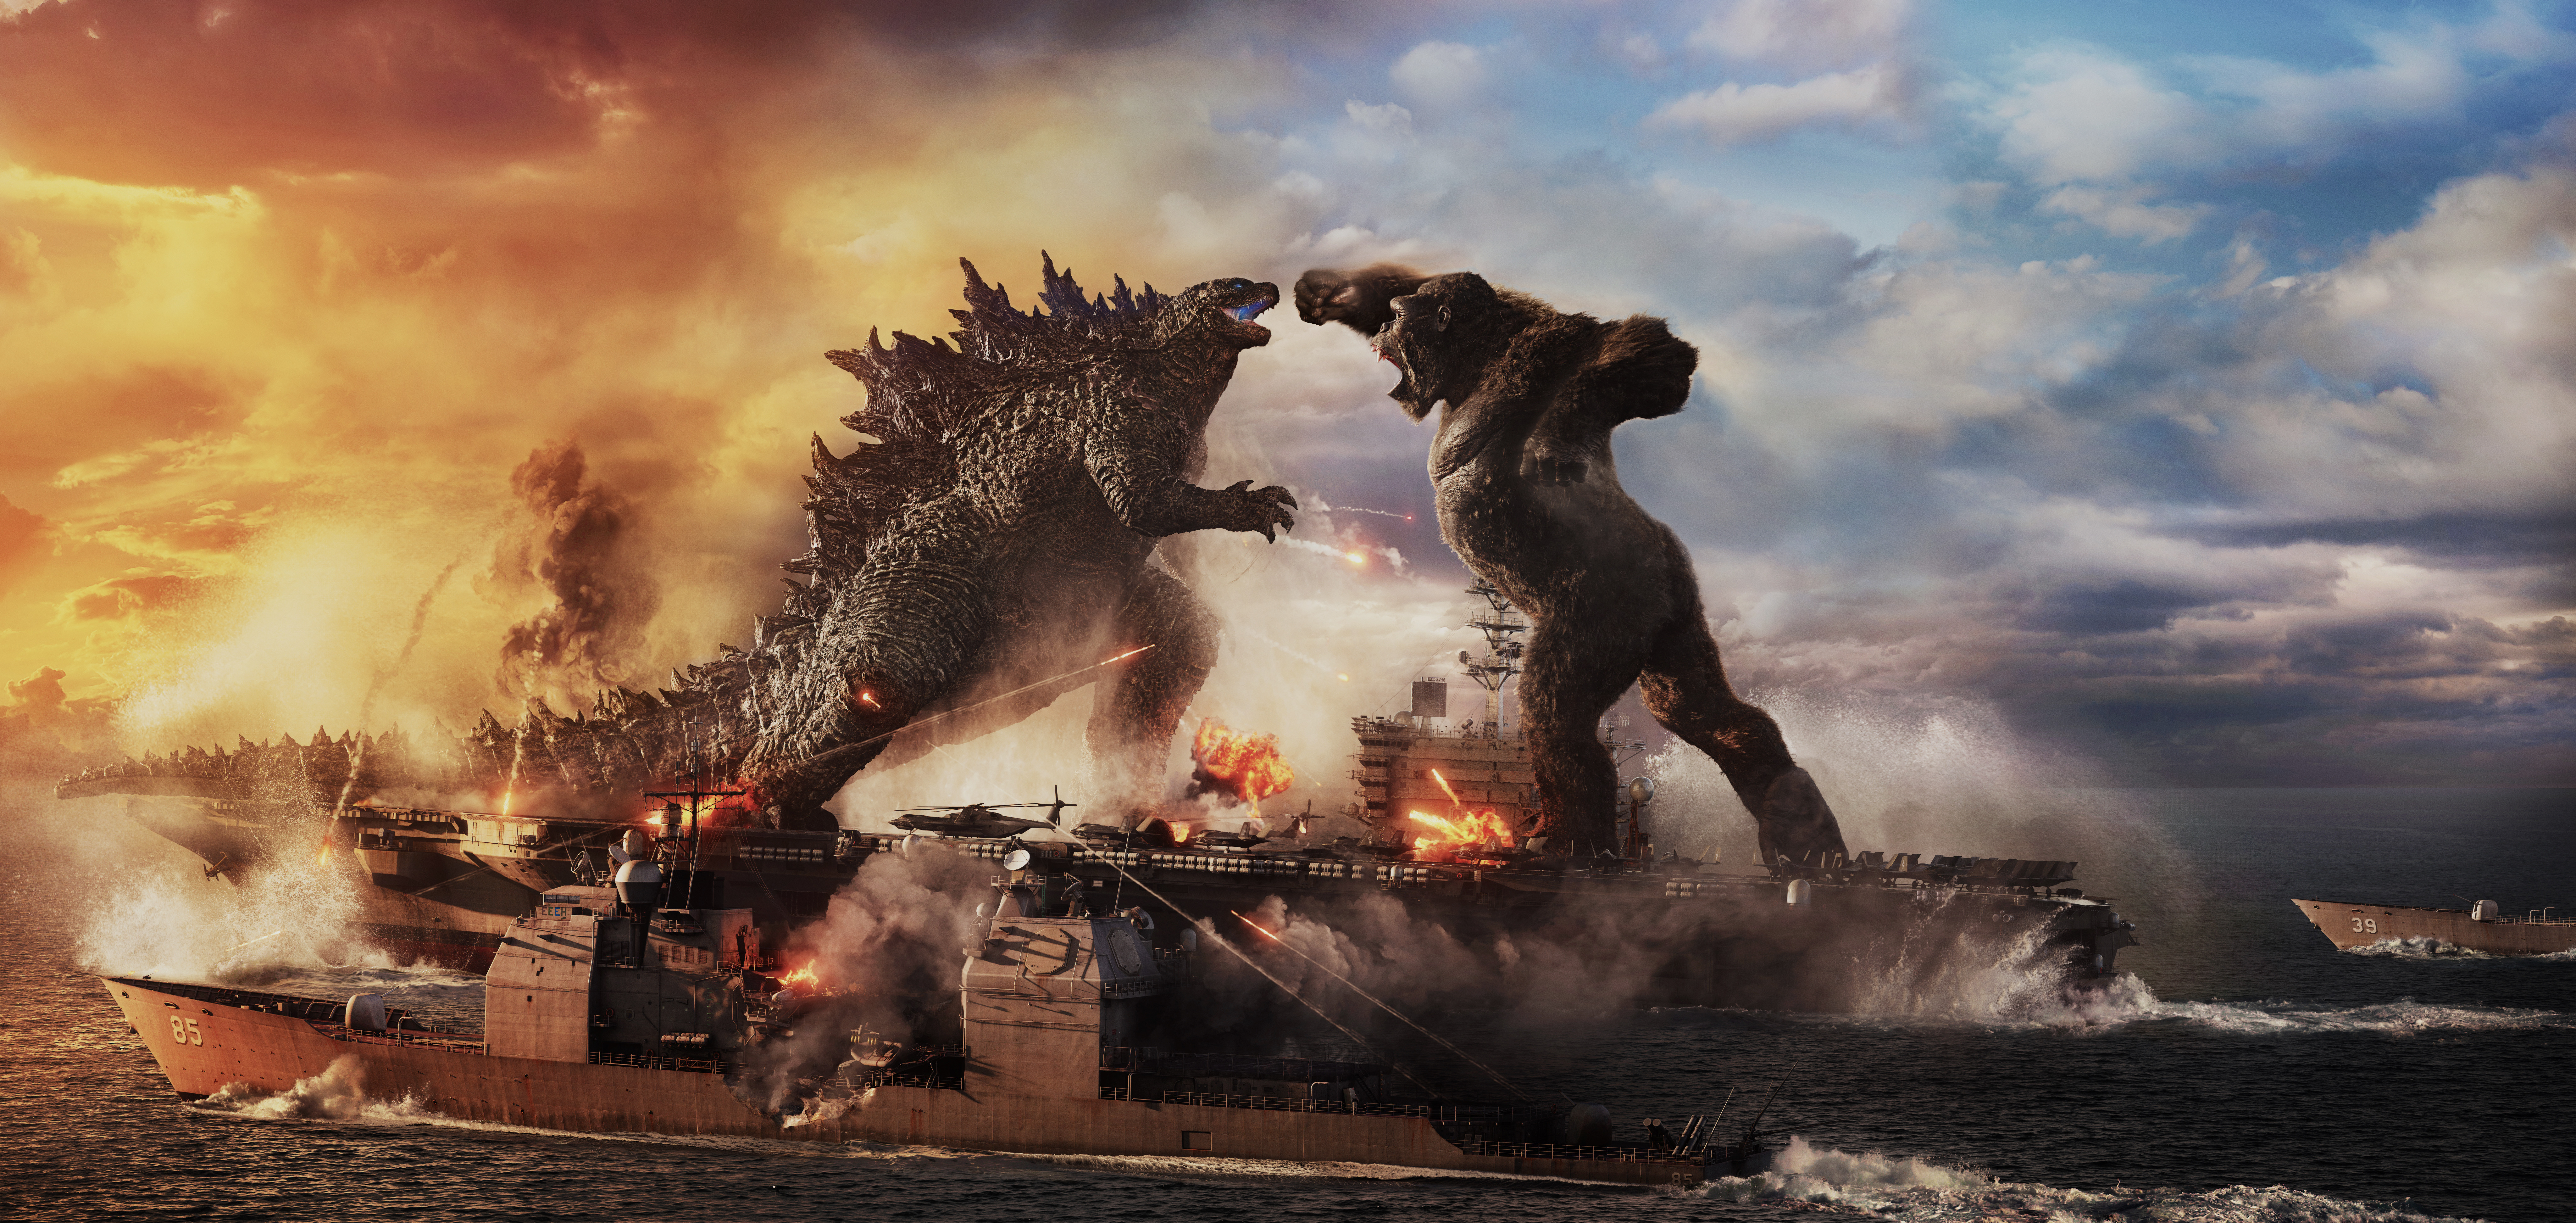 King Kong Vs Godzilla Artwork Wallpapers